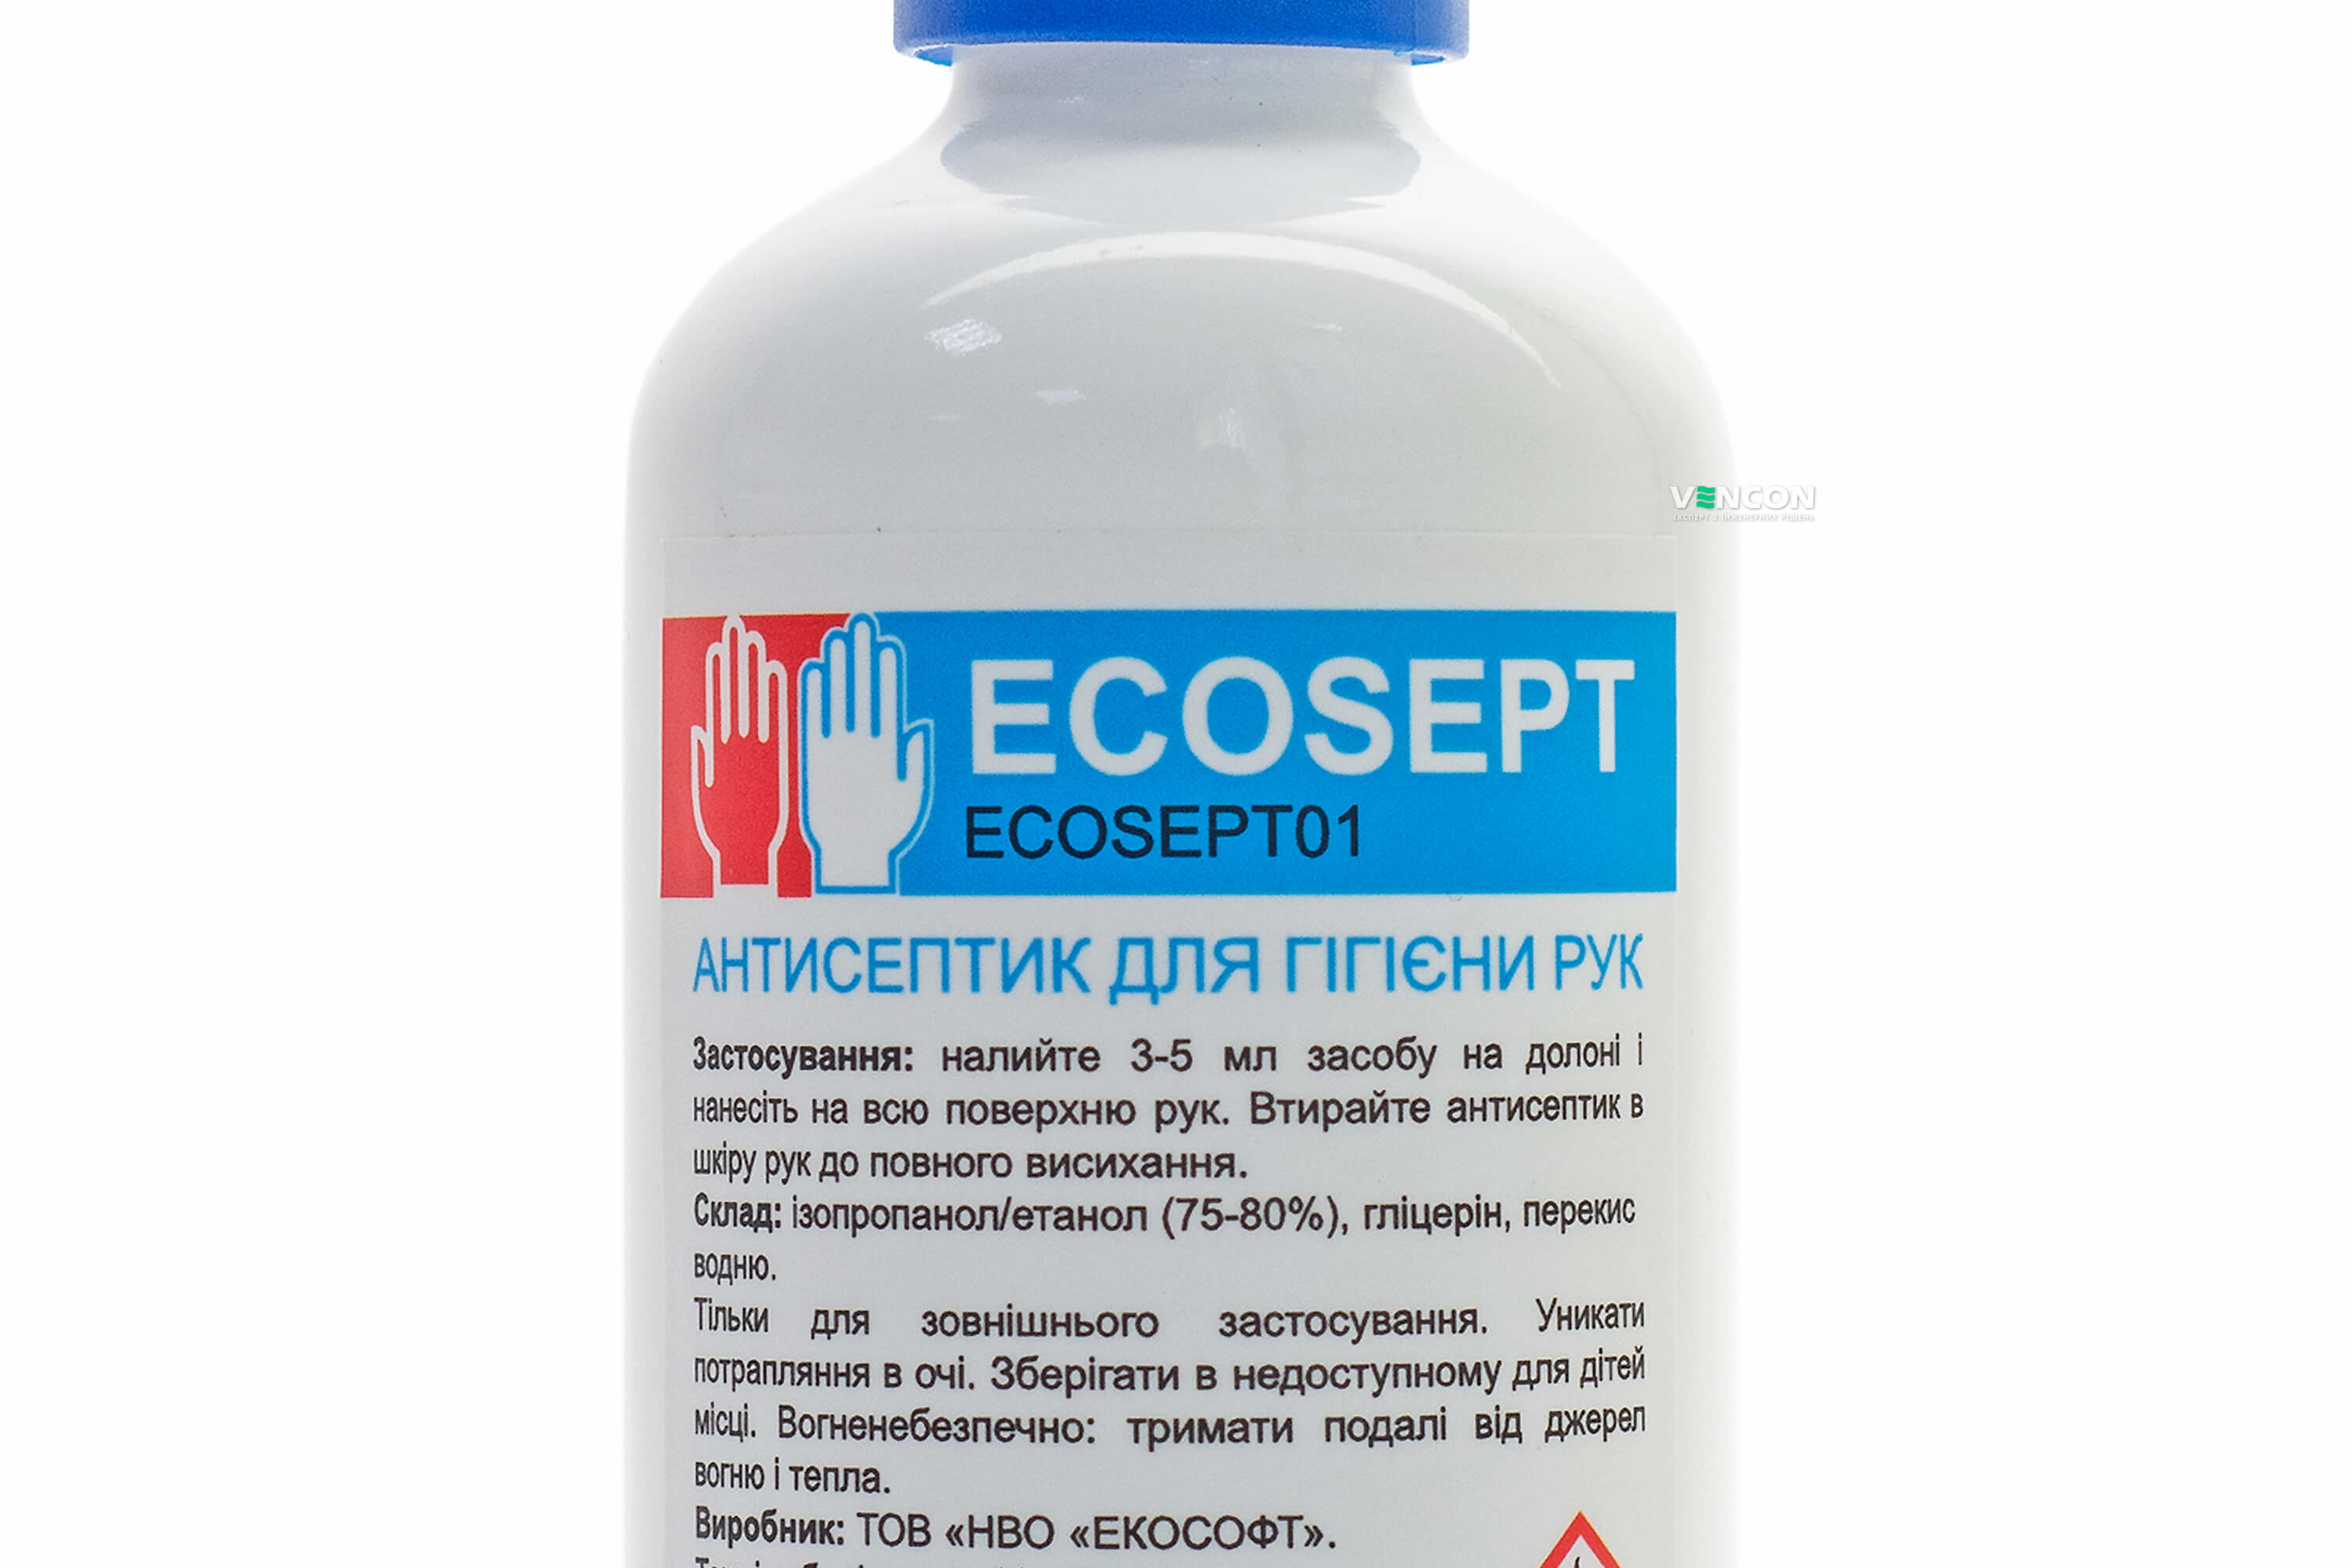 продаём Ecosoft ECOSEPT 100 мл (для рук) в Украине - фото 4